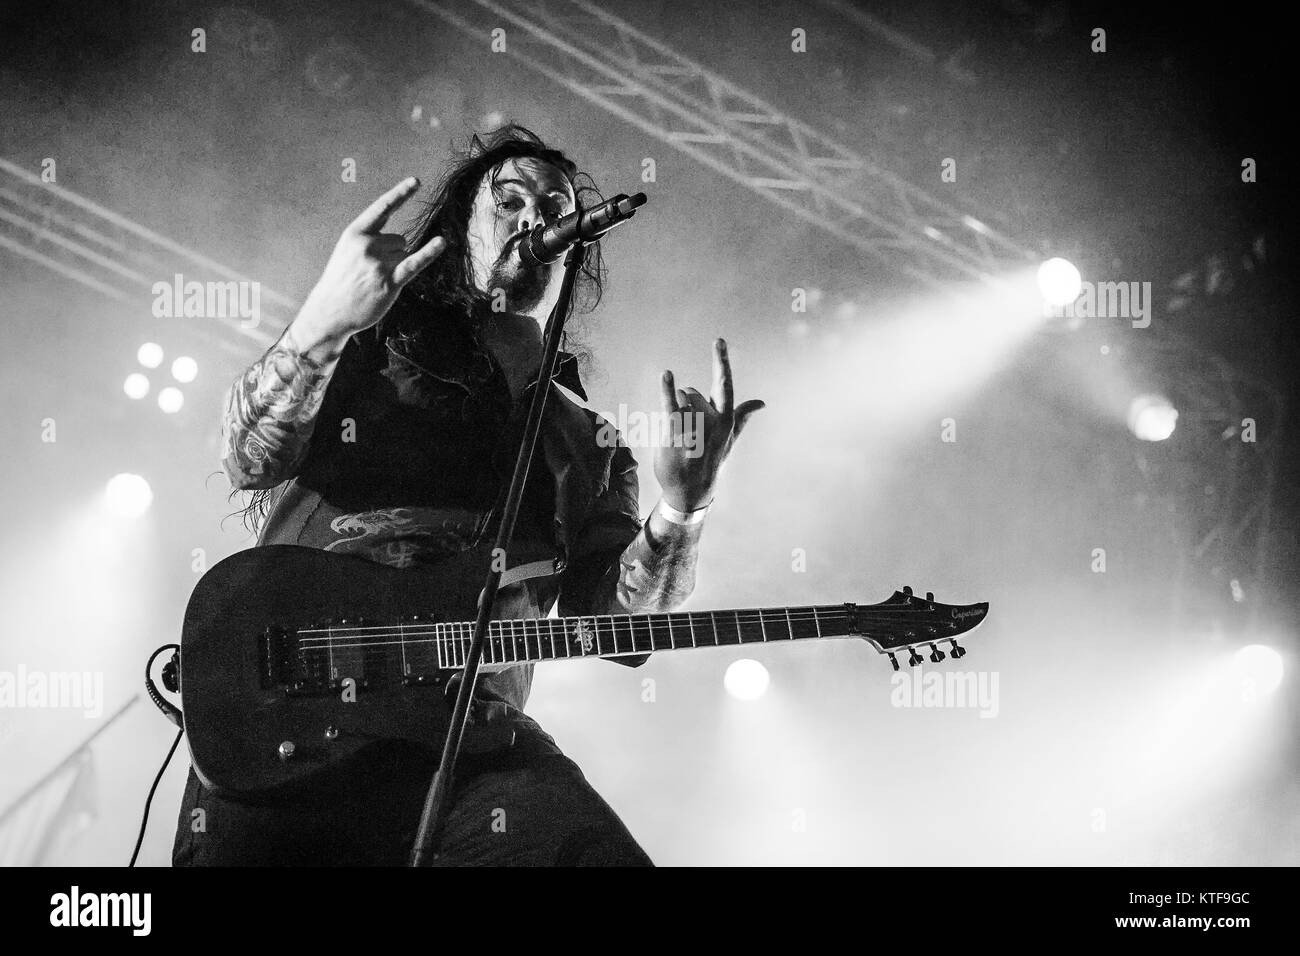 Le groupe de metal progressif suédois Evergrey effectue un concert live au festival de musique suédois Sweden Rock Festival 2015. Ici le chanteur Tom S. Englund est vu sur scène. La Suède, 03/06 2015. Banque D'Images